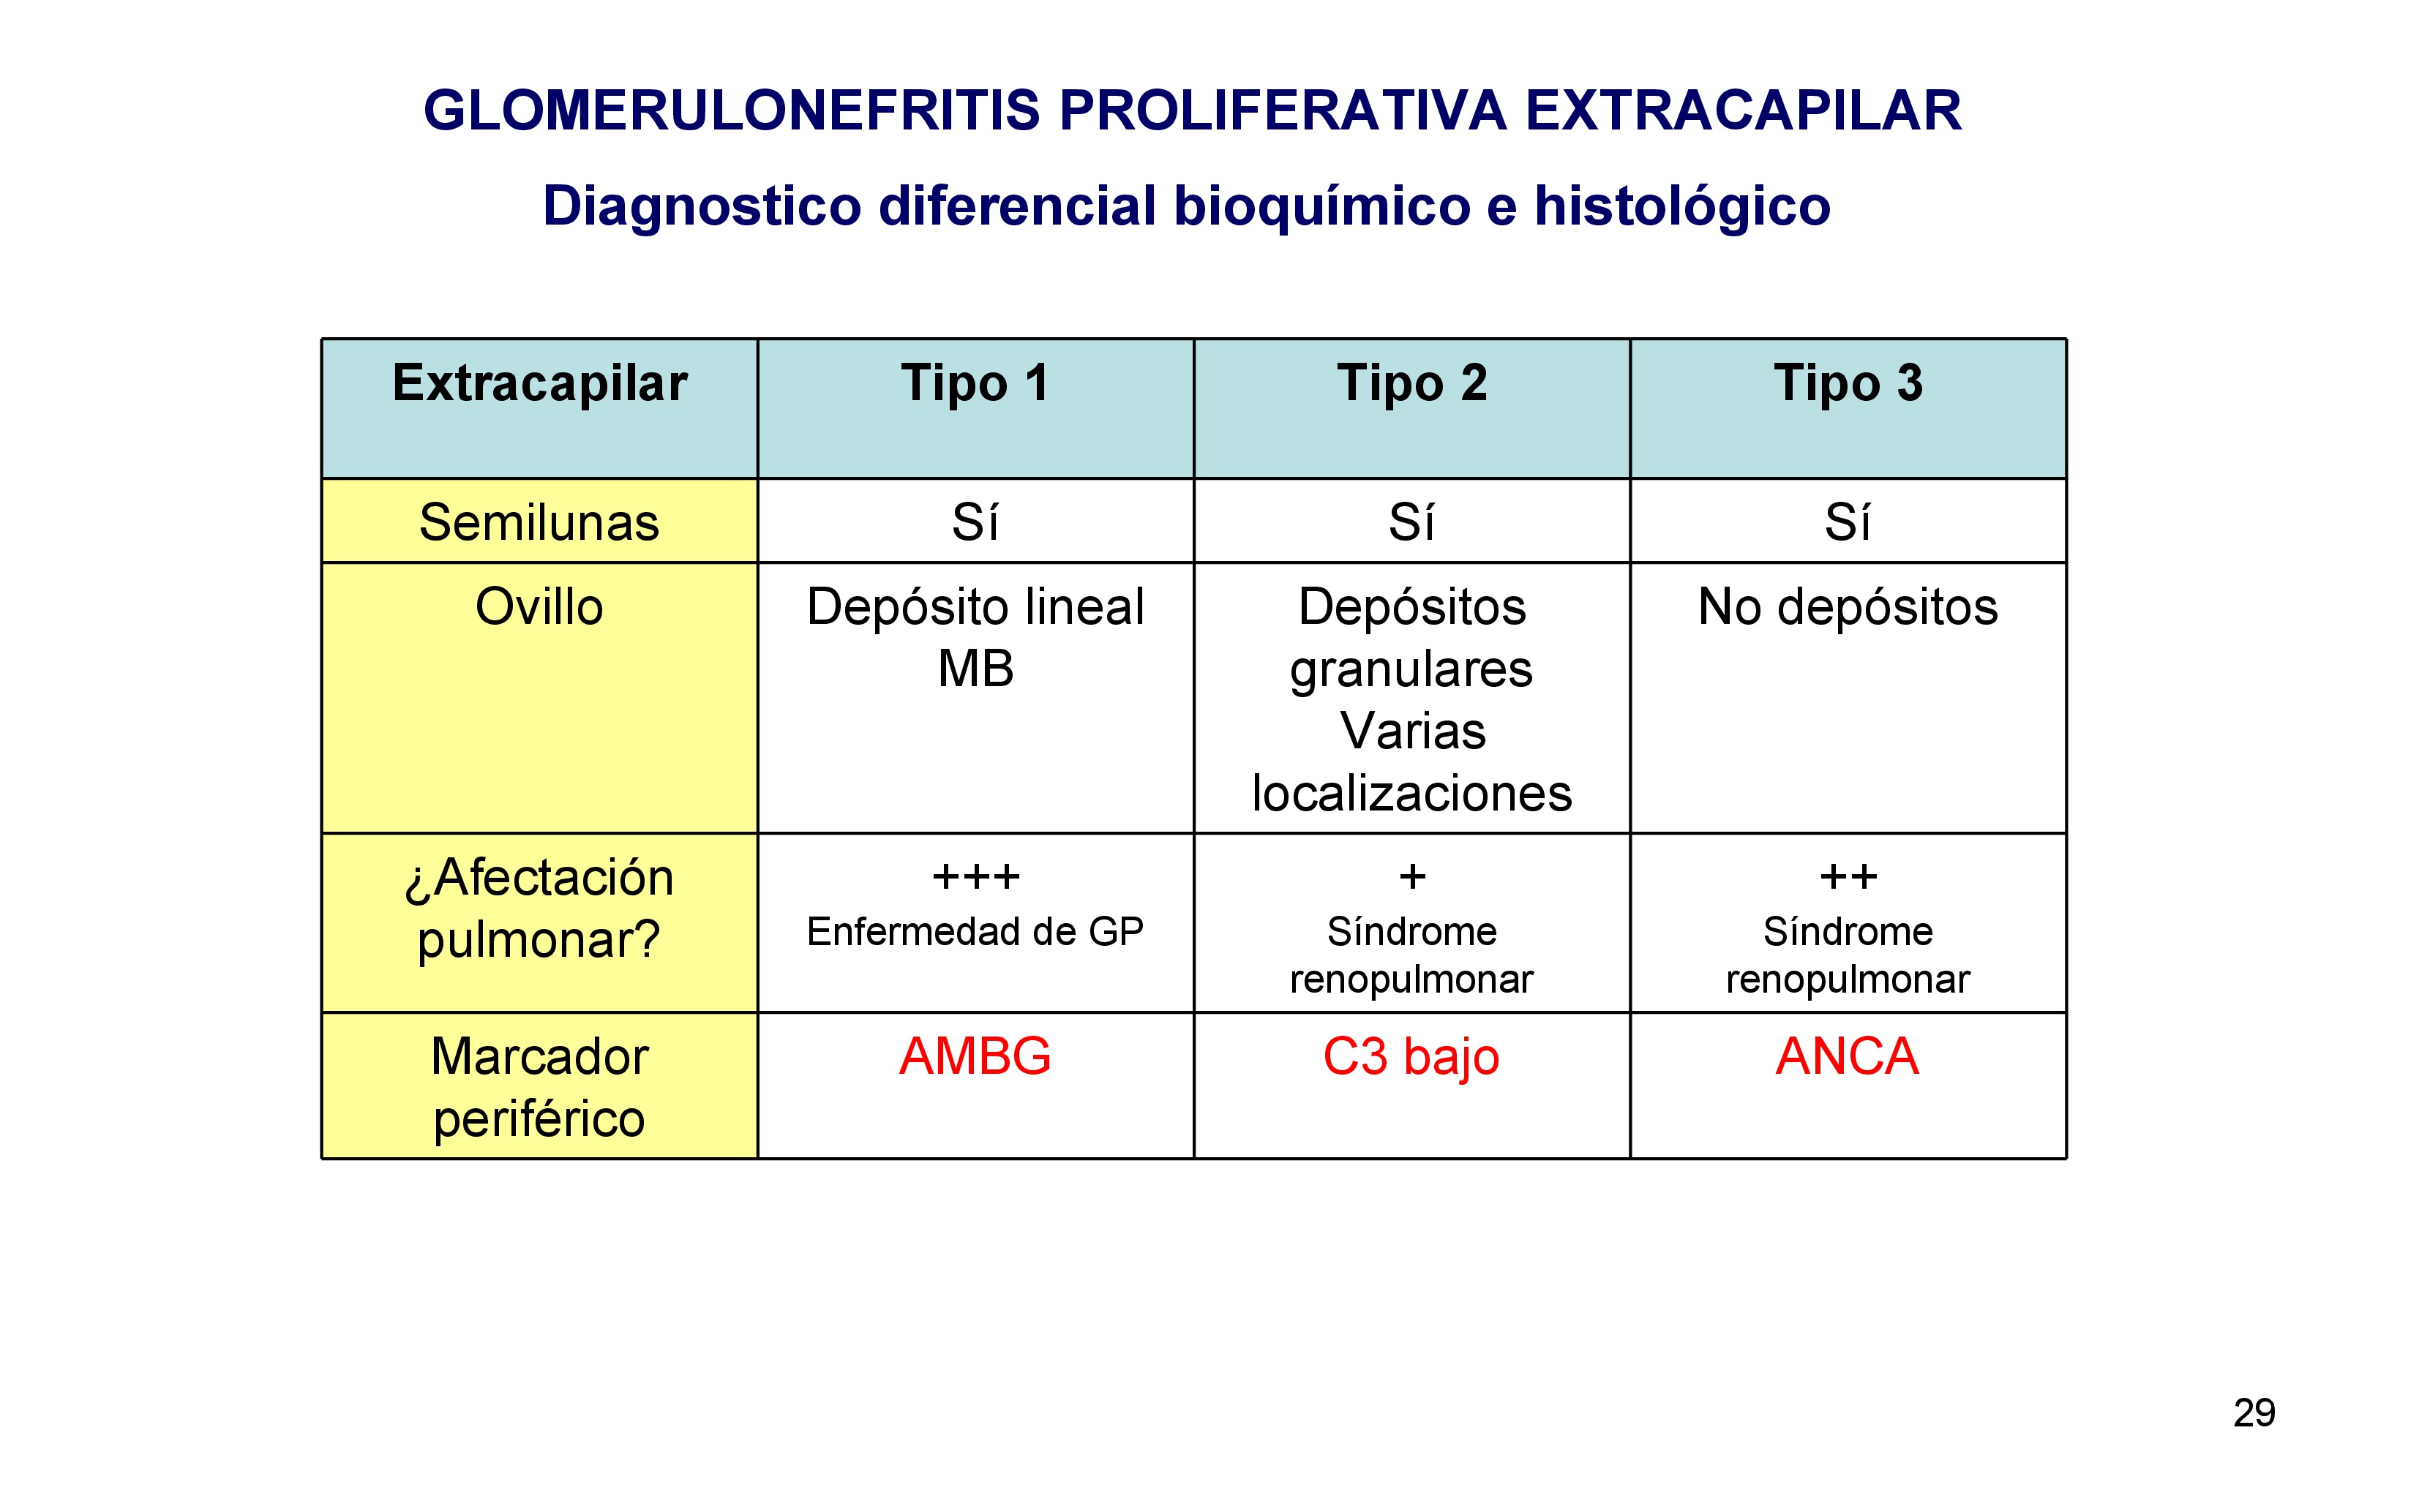 Cuadro resumen los tres tipos de glomerluonefritis extracapilares. 